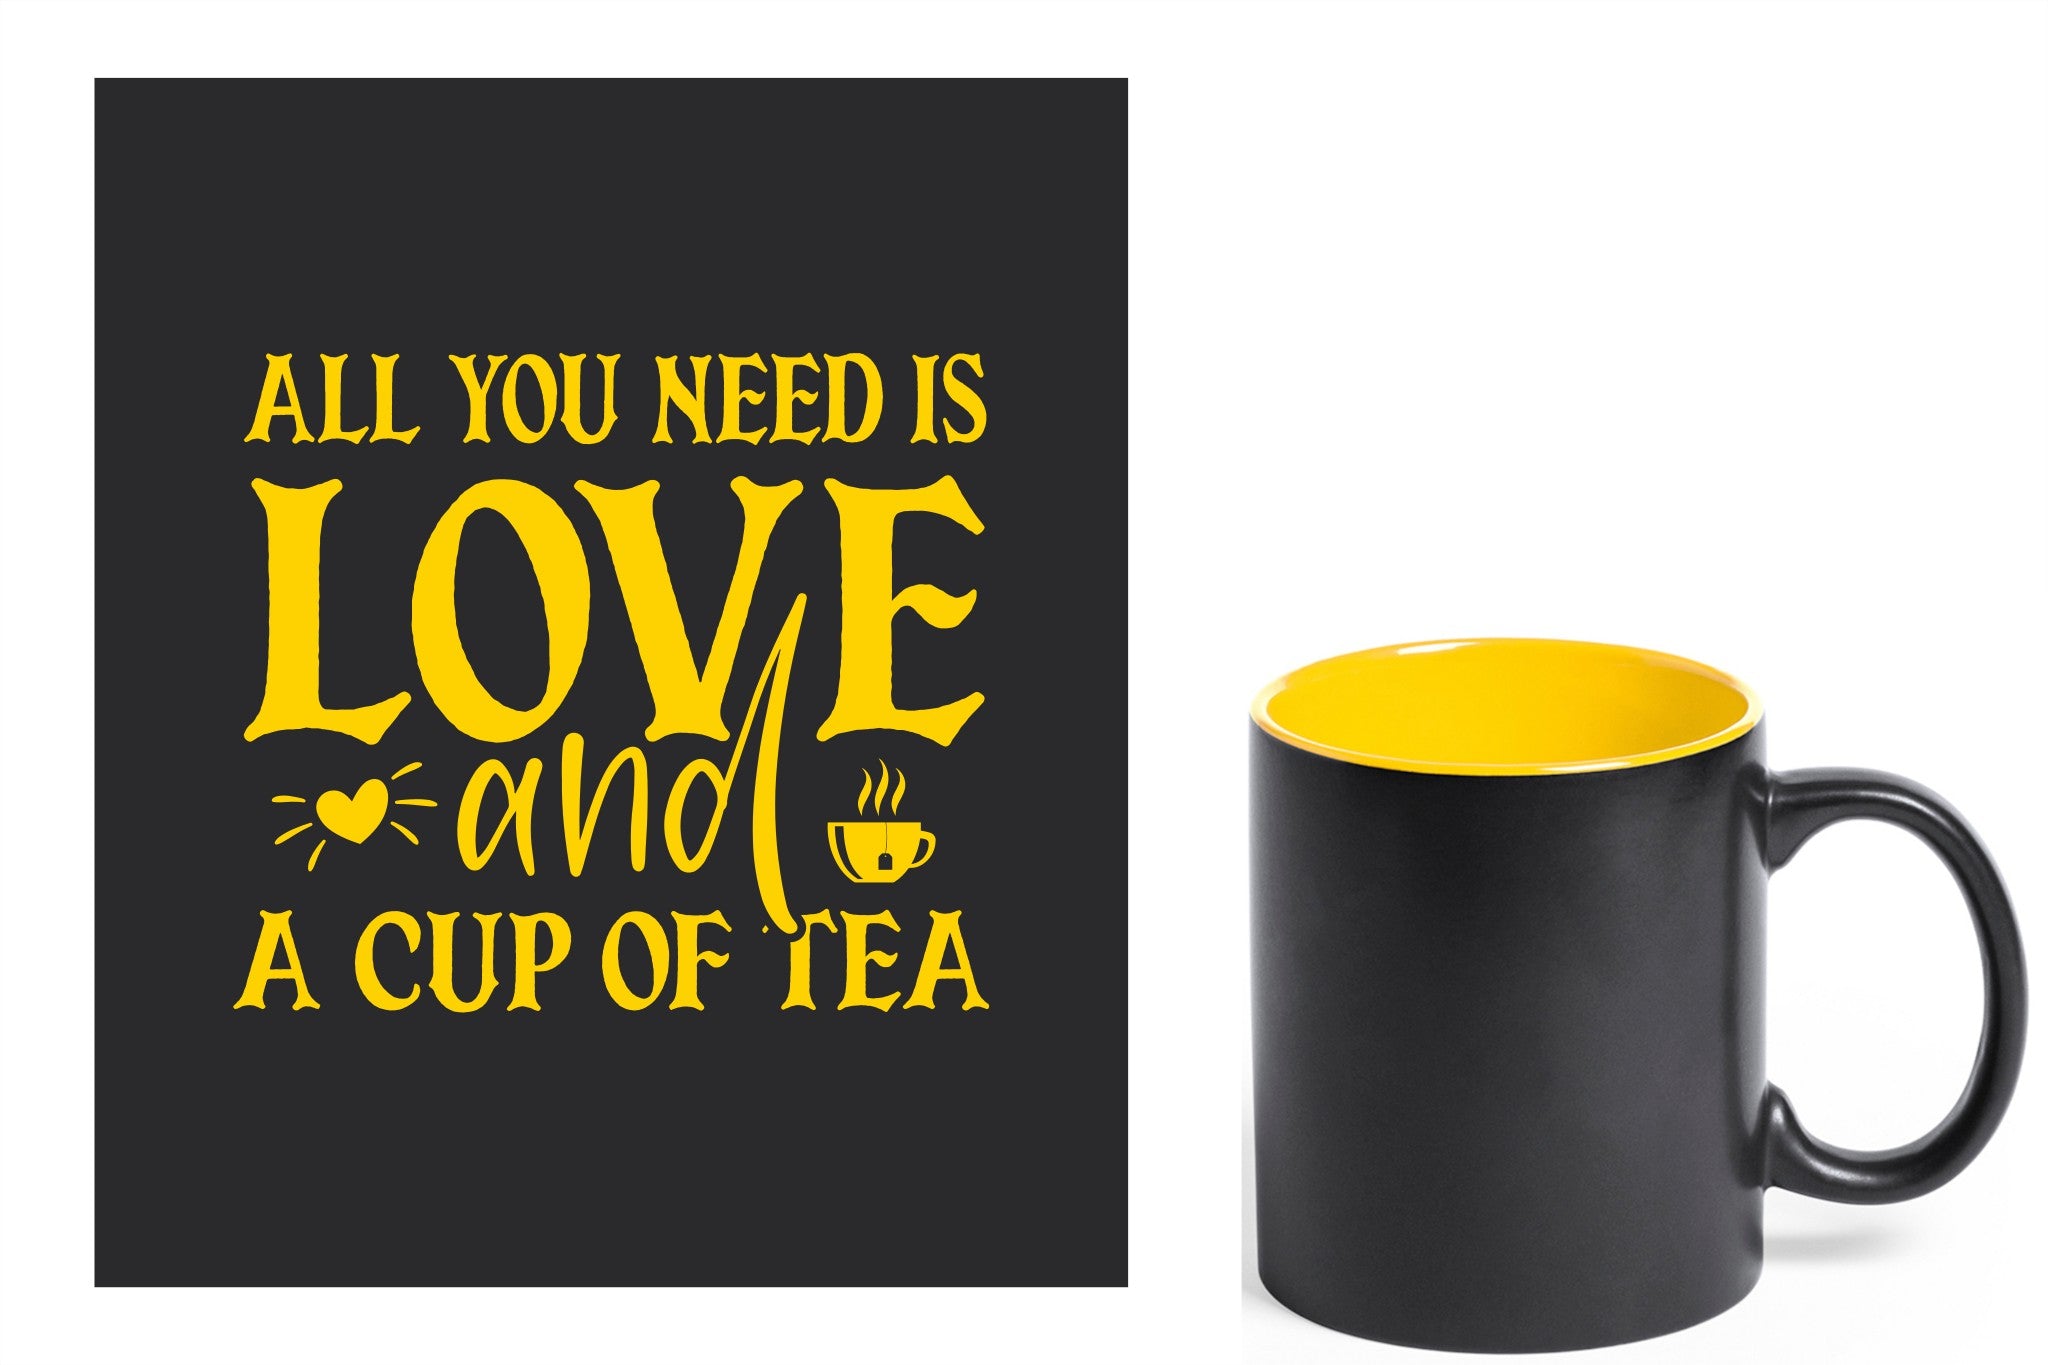 zwarte keramische mok met gele gravure  'All you need is love and a cup of tea'.